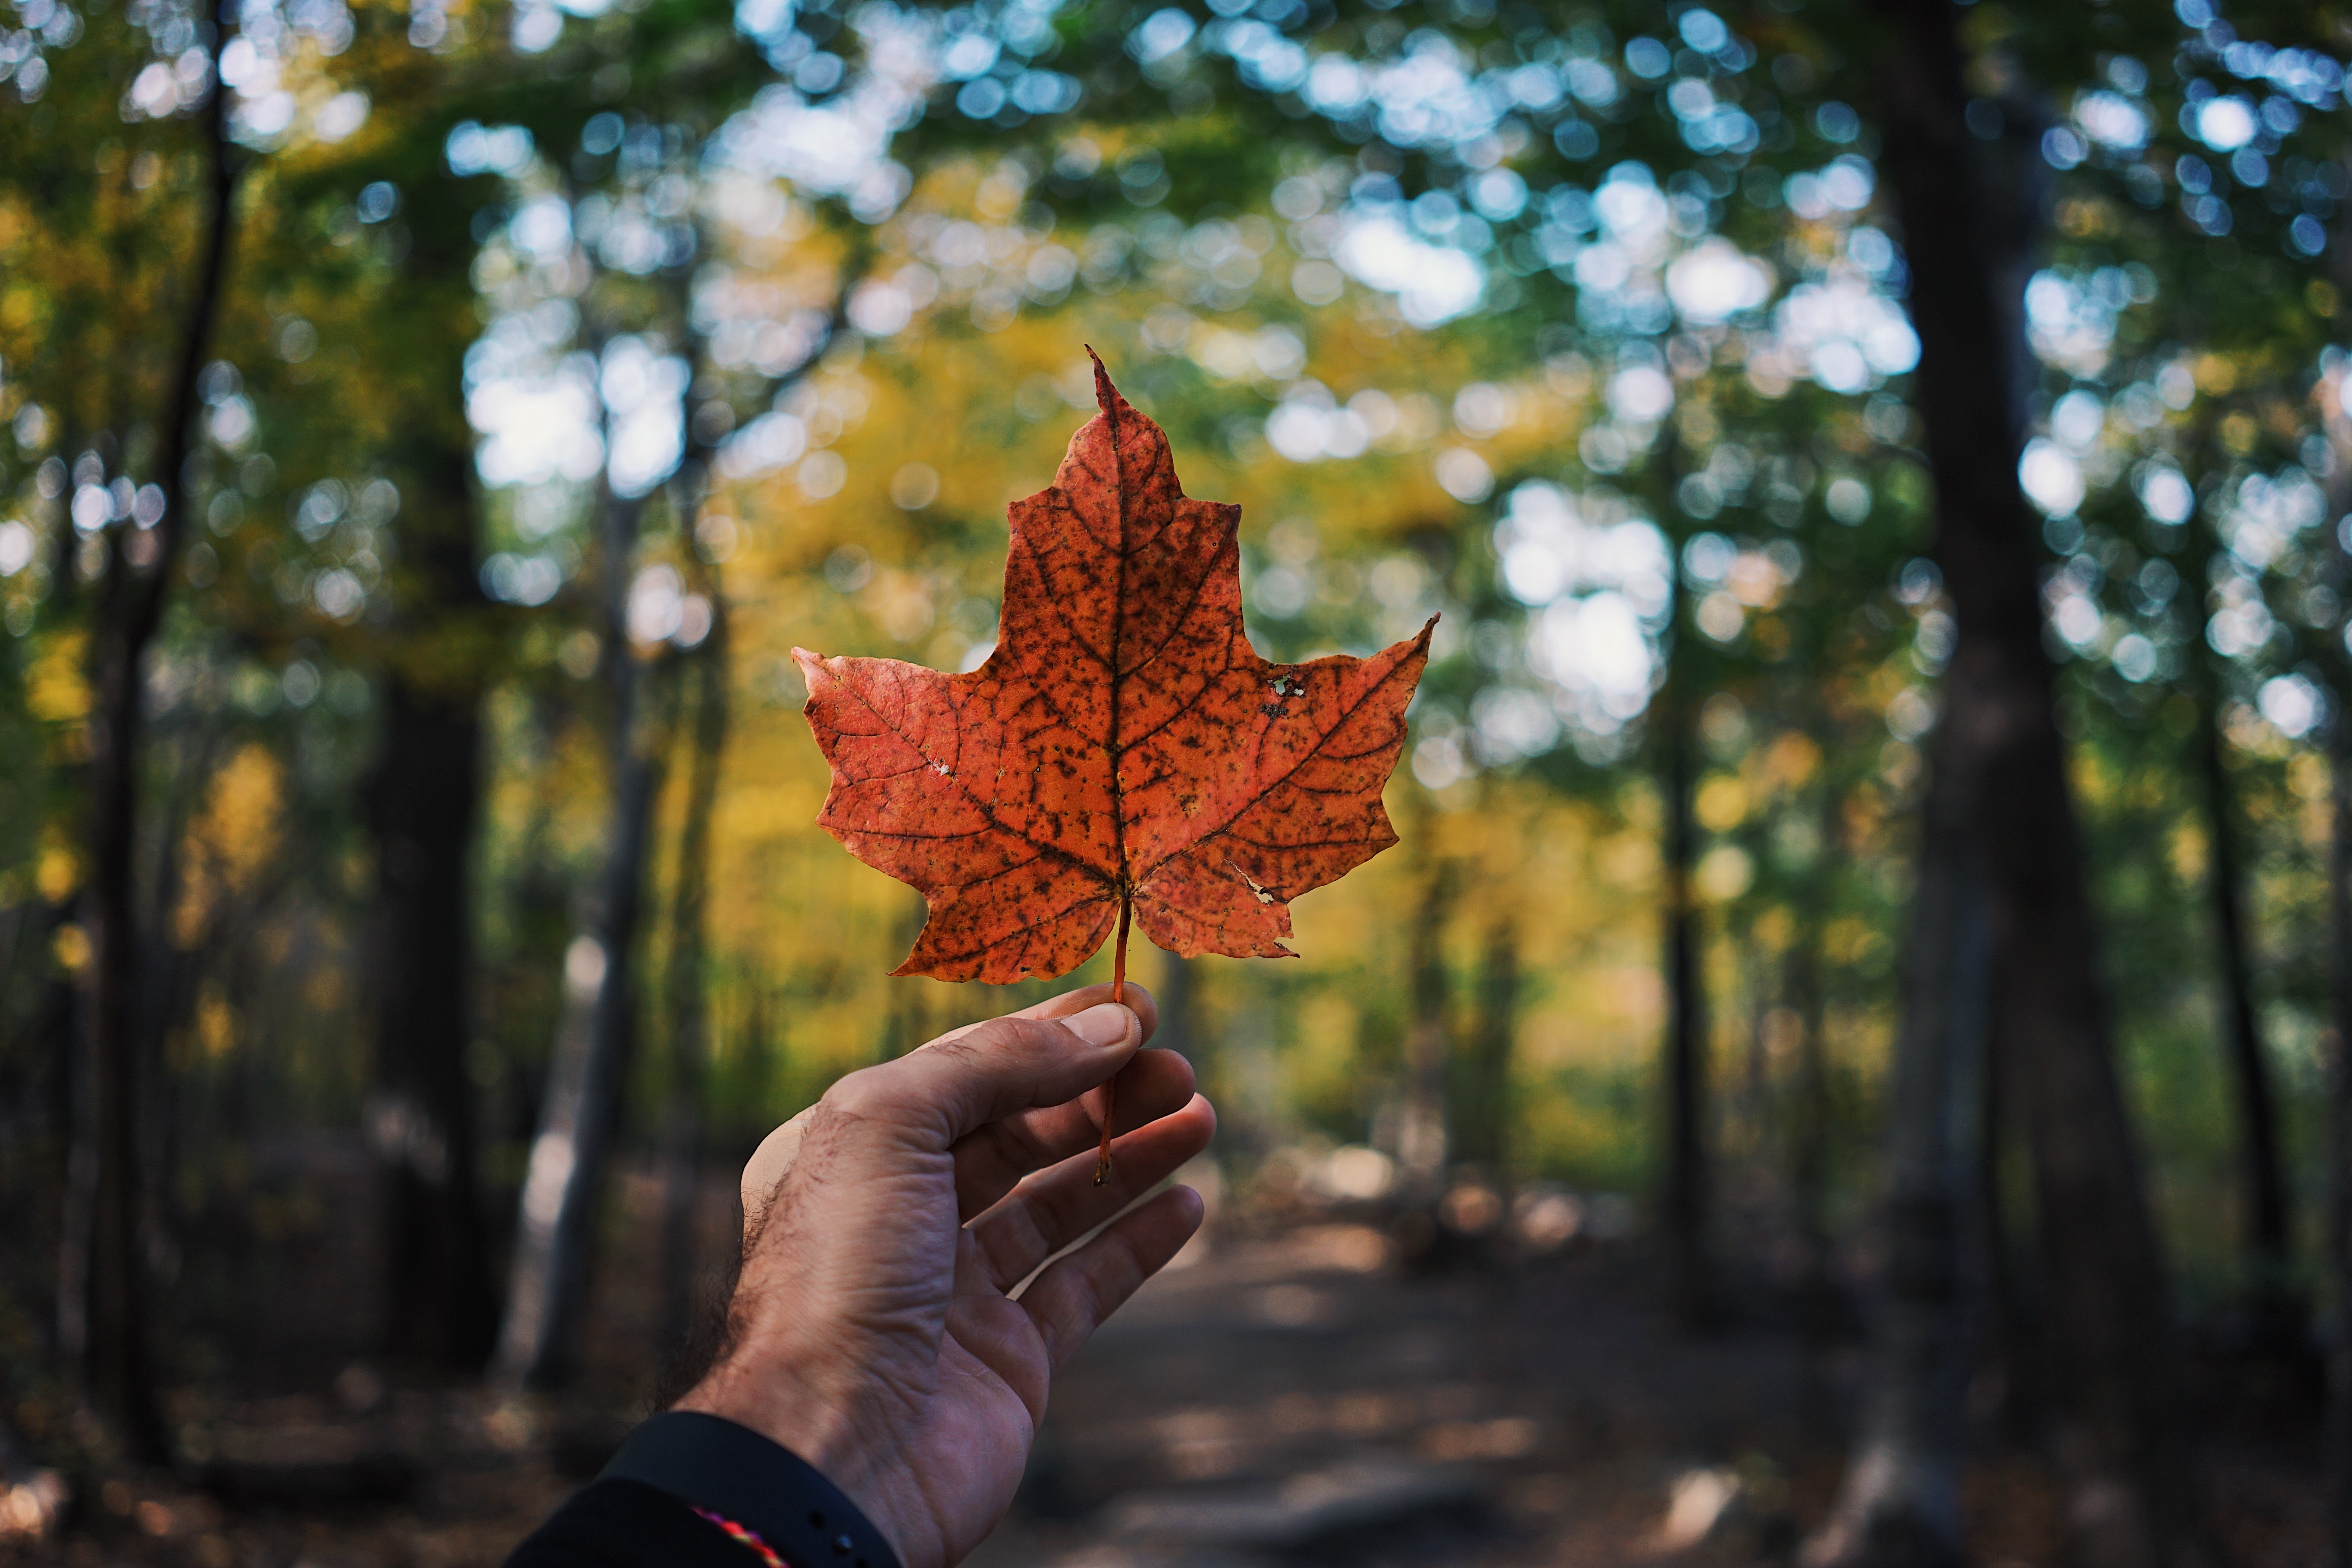 El maple como simbolo representativo de Canadá 

